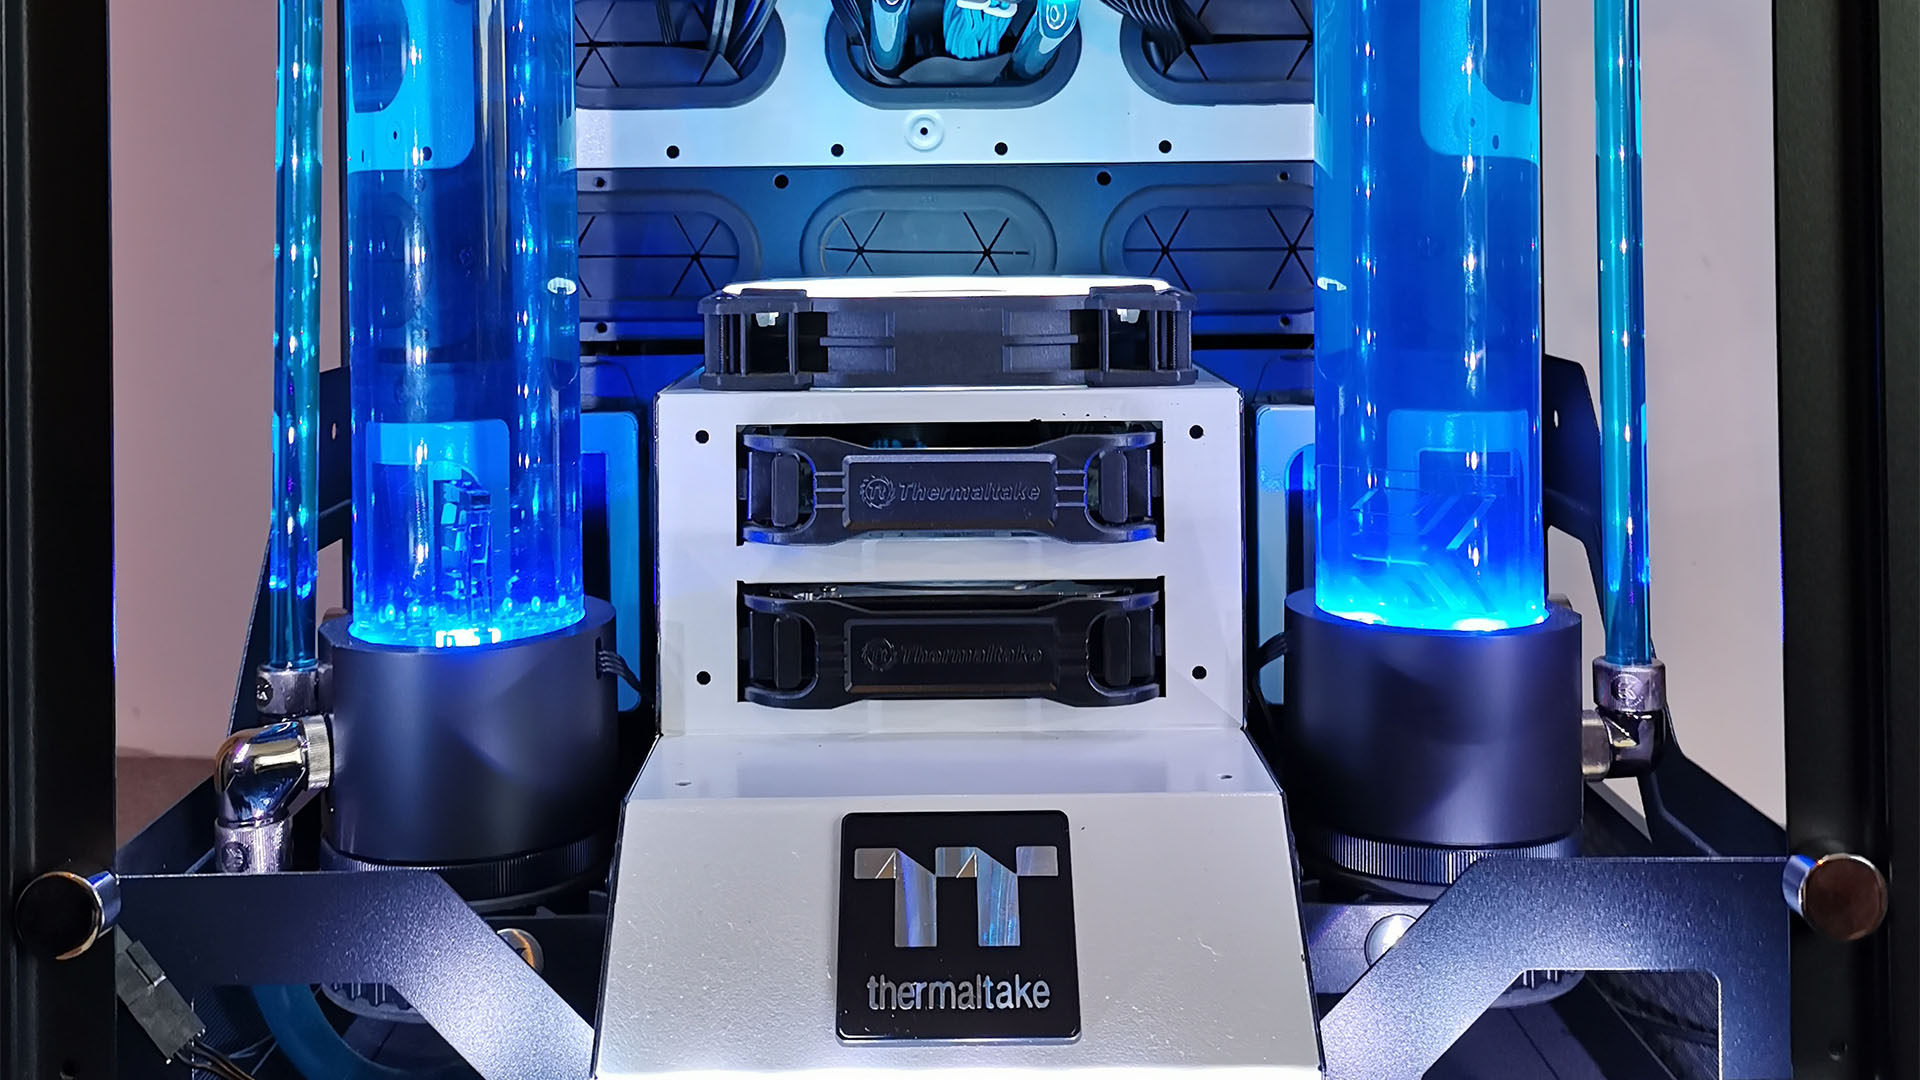 Thermaltake 900 kasasının içindeki su soğutmalı oyun bilgisayarının rezervuarları